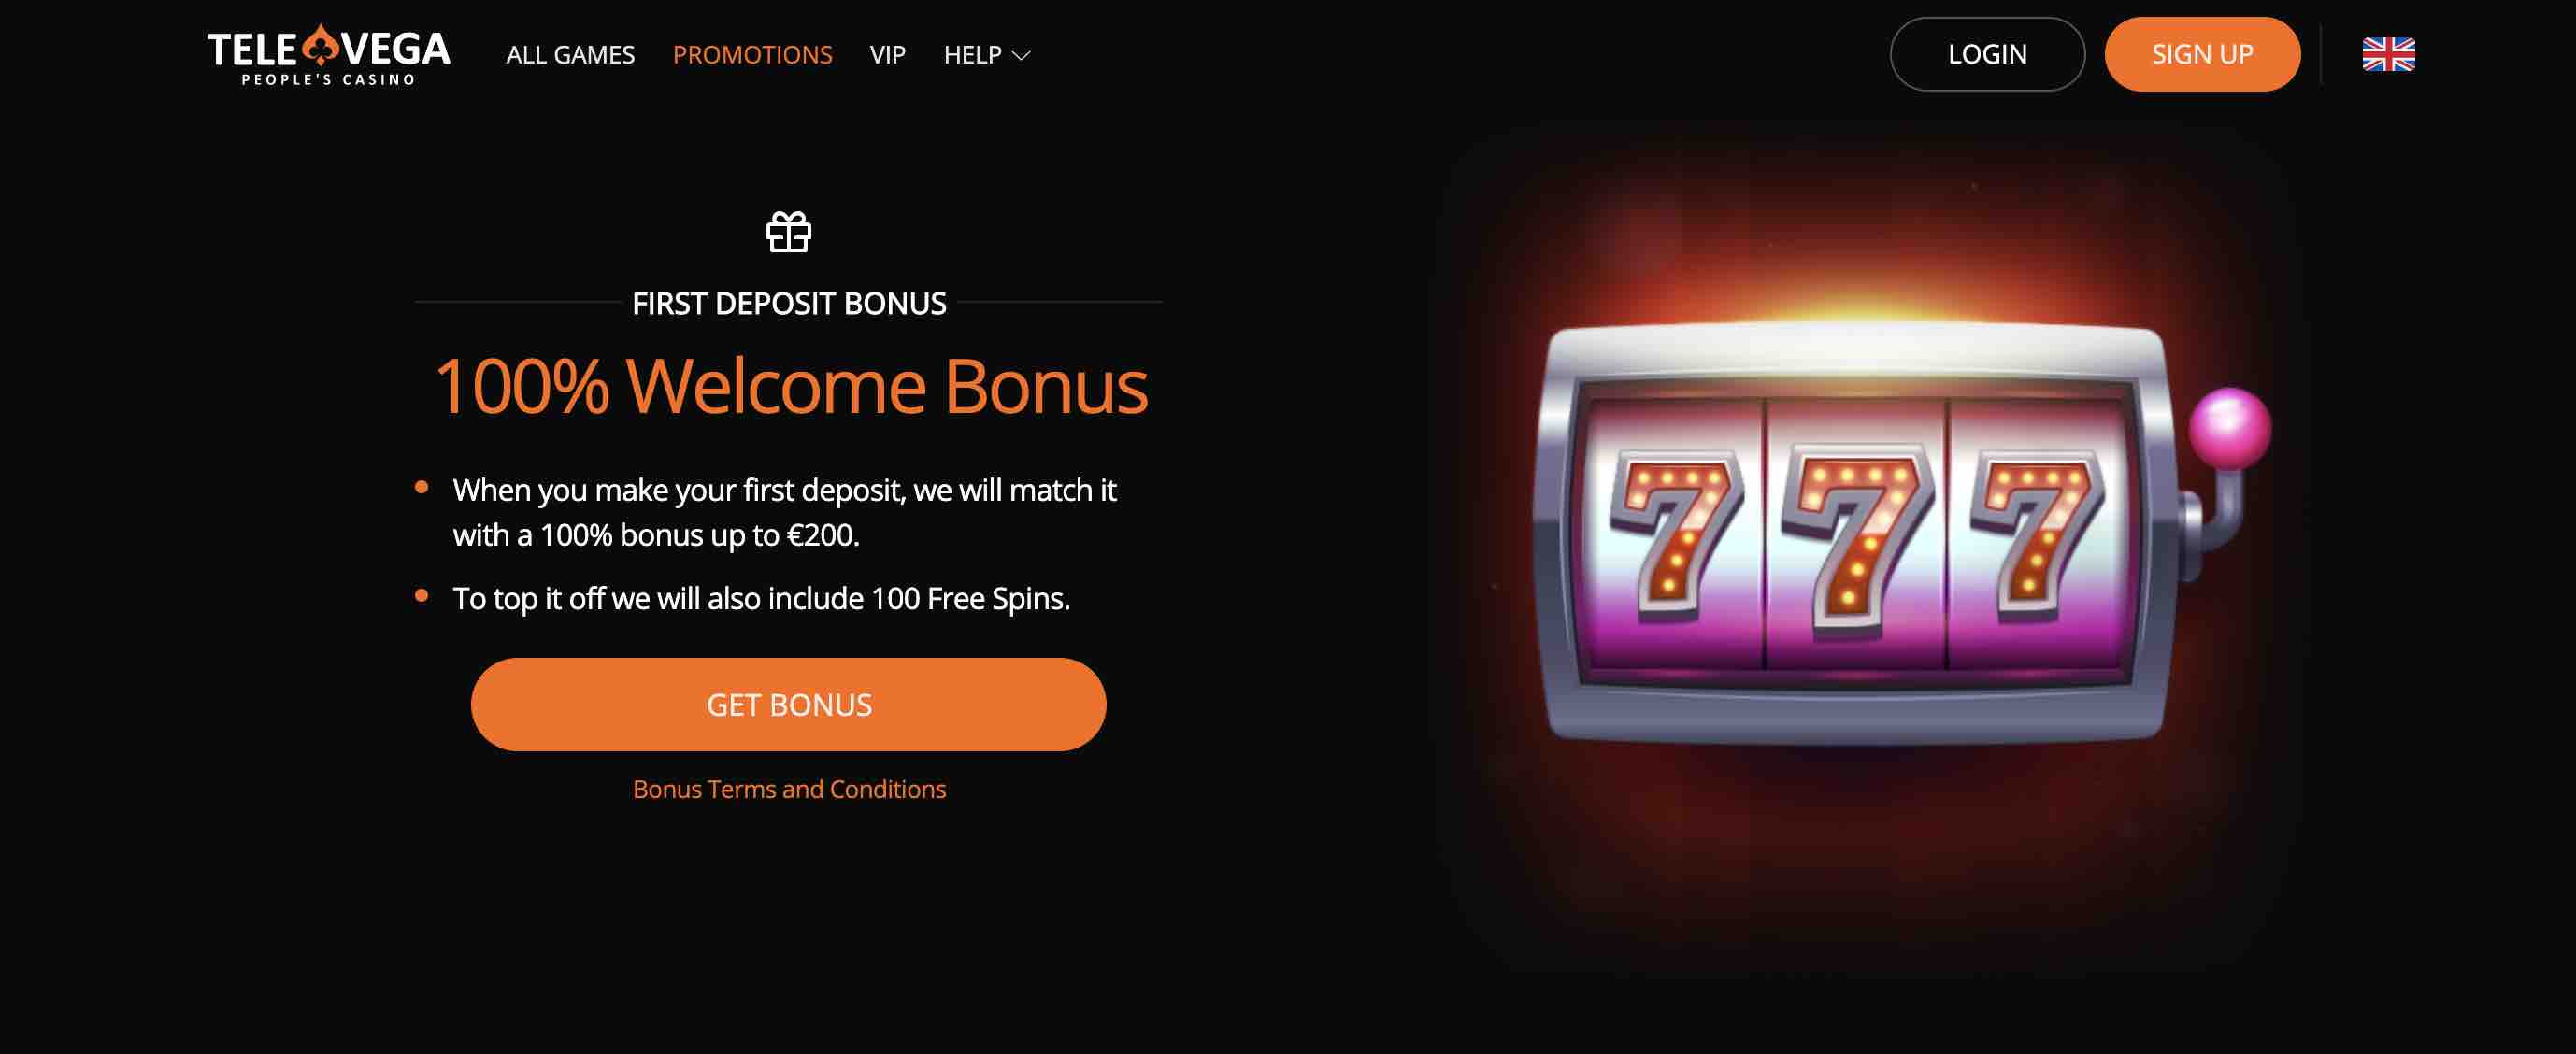 TeleVega Casino Welcome Bonus